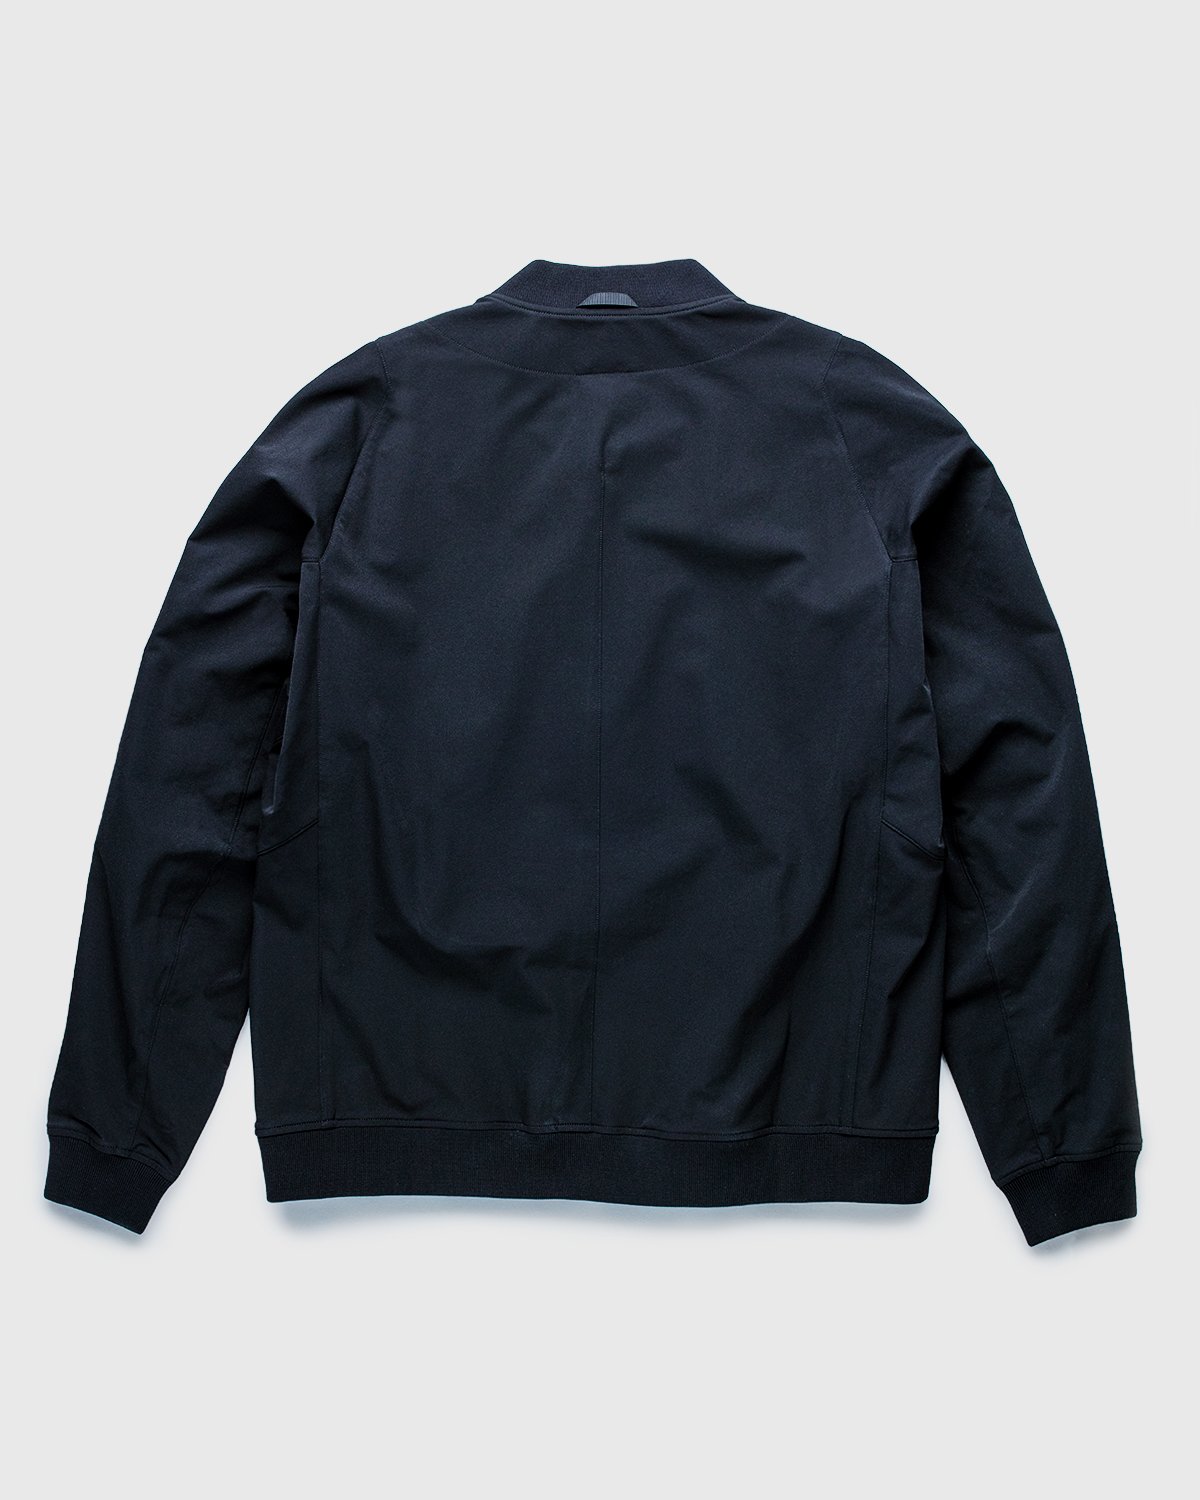 ACRONYM - J90-DS Jacket Black - Clothing - Black - Image 2